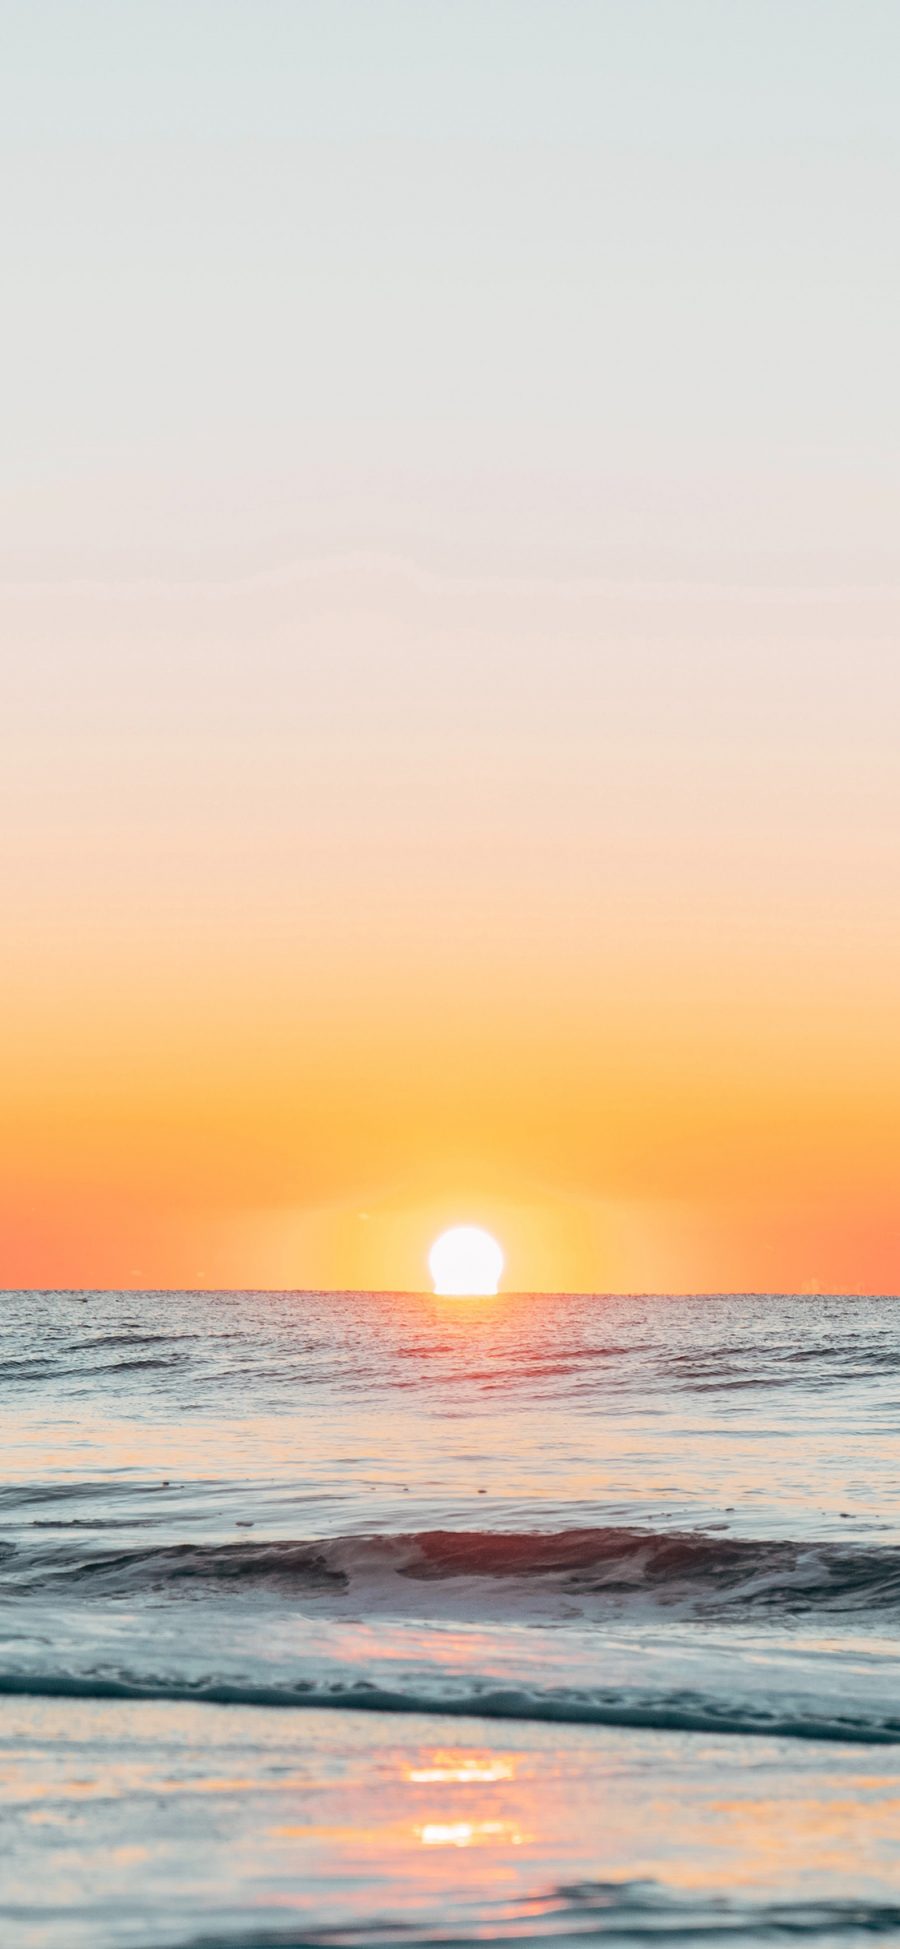 [2436×1125]大海 海平面 朝阳 日出 苹果手机壁纸图片